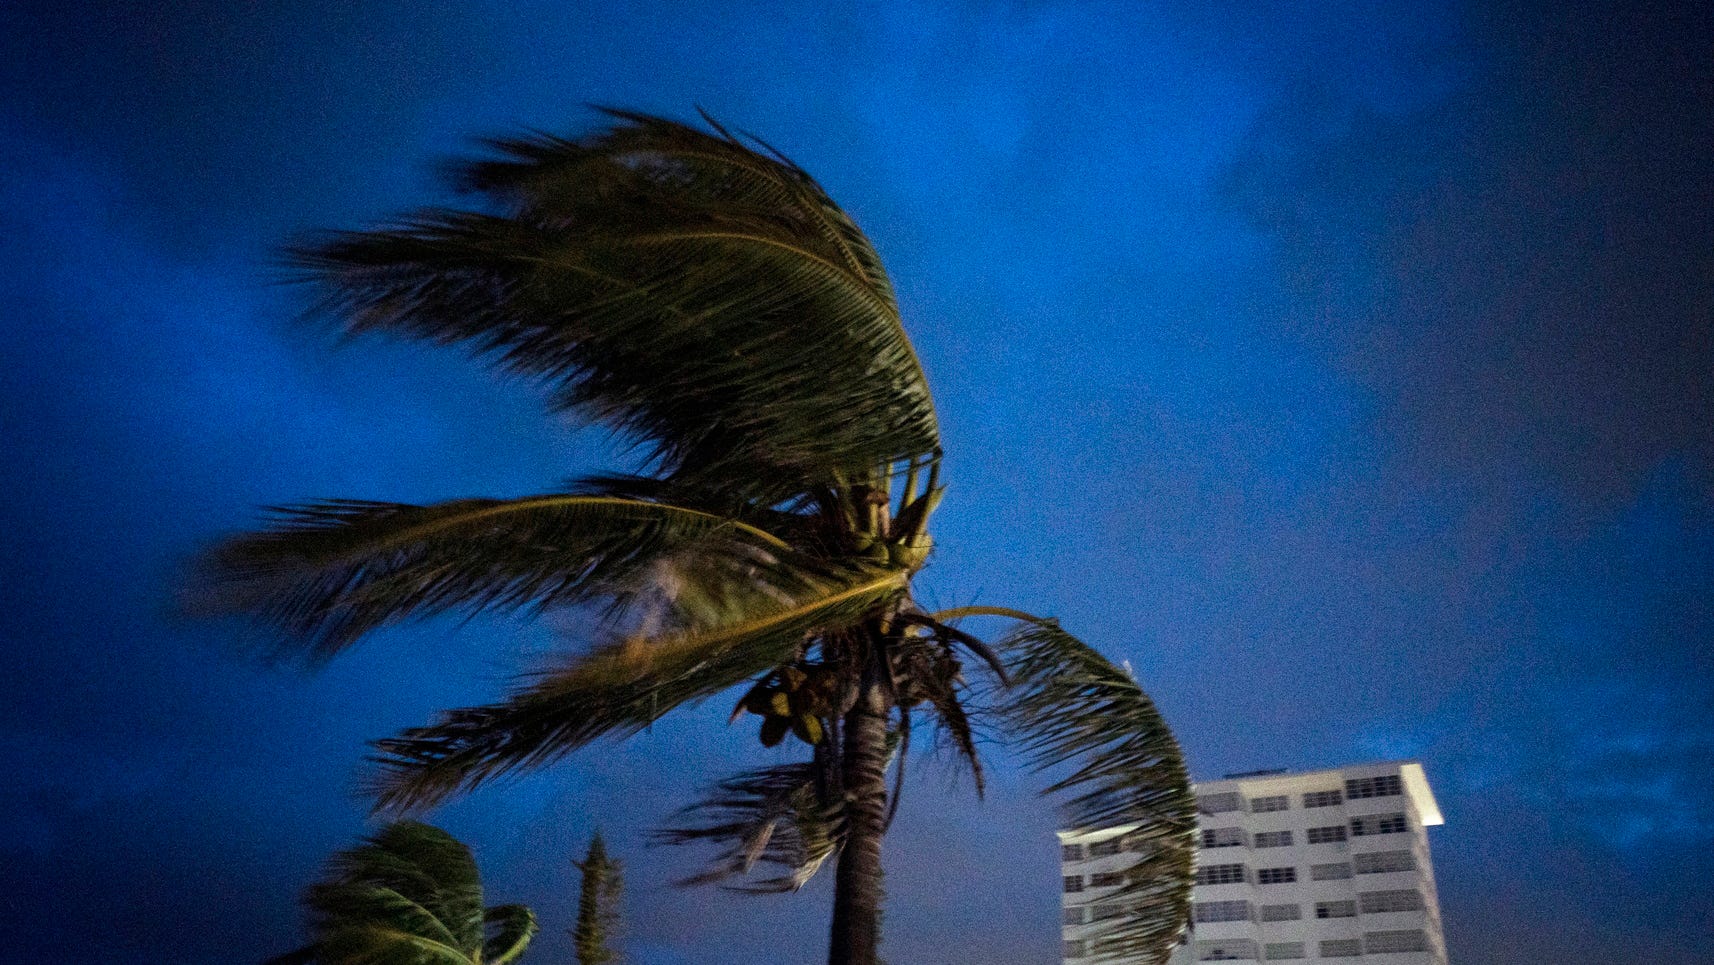 Begin ik luister naar muziek Mijnwerker Hurricane Dorian: Live cams in Florida, Bahamas, Caribbean Isalnds